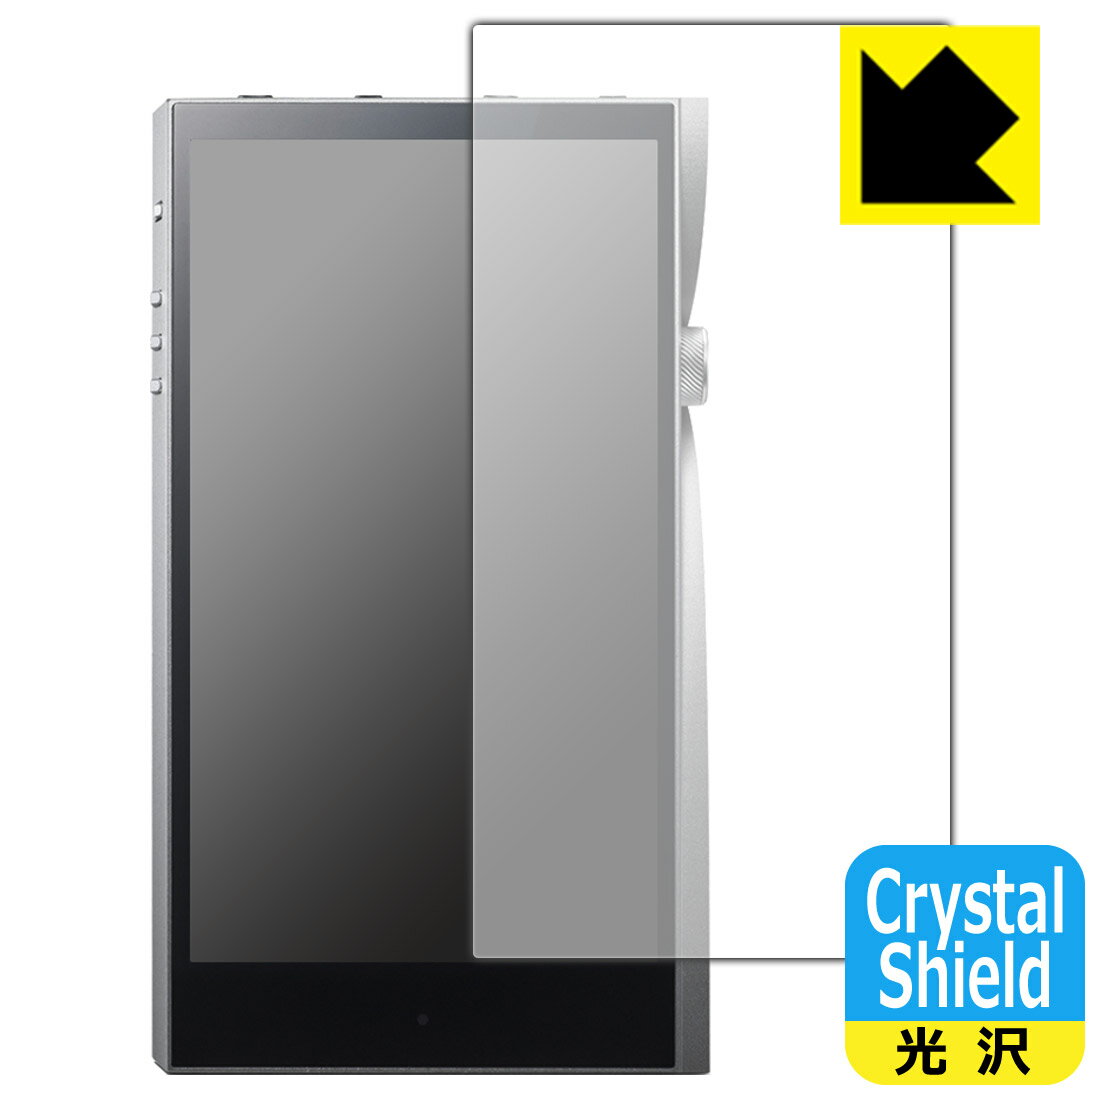 【1000円ポッキリ】【ポイント5倍】Crystal Shield Astell&Kern A&futura SE200 (前面のみ) 日本製 自社製造直販 買いまわりにオススメ